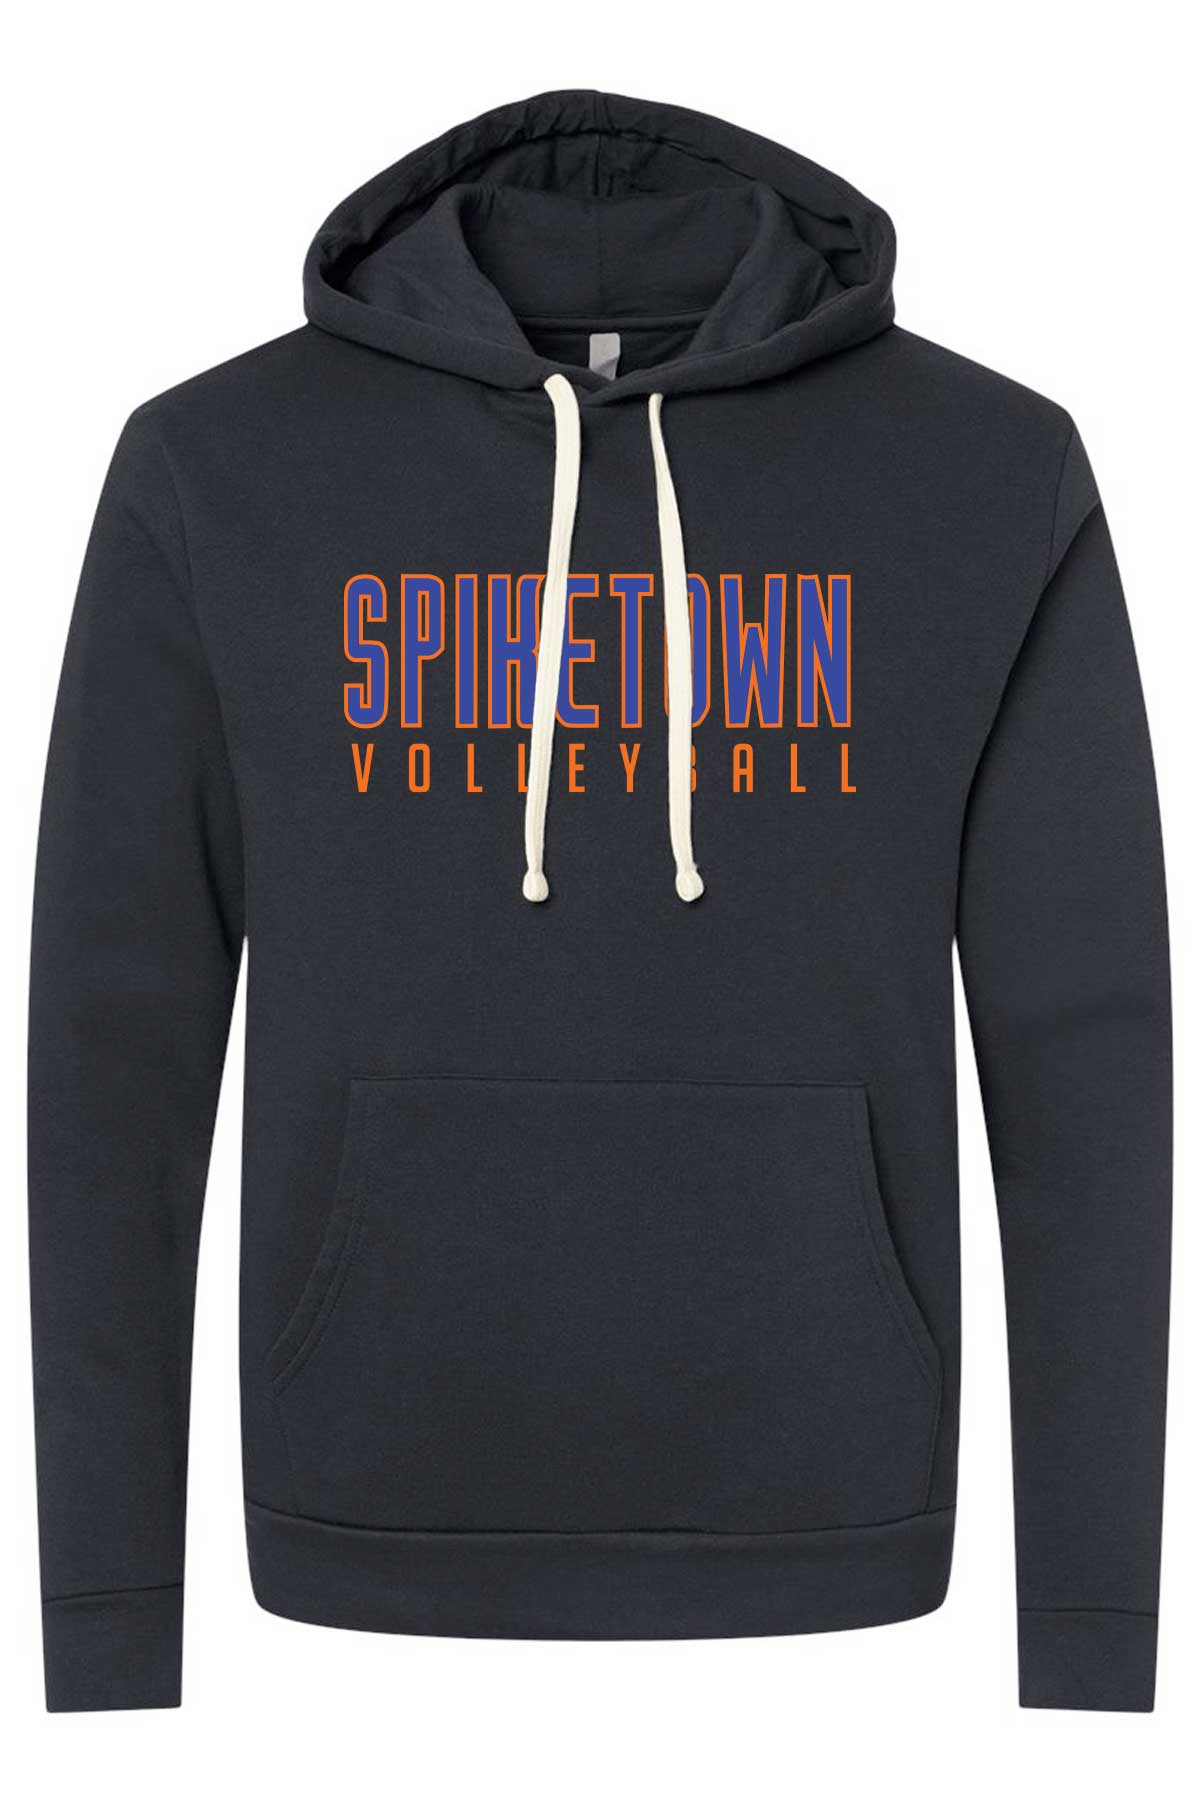 Spiketown Volleyball Premium Hoodie